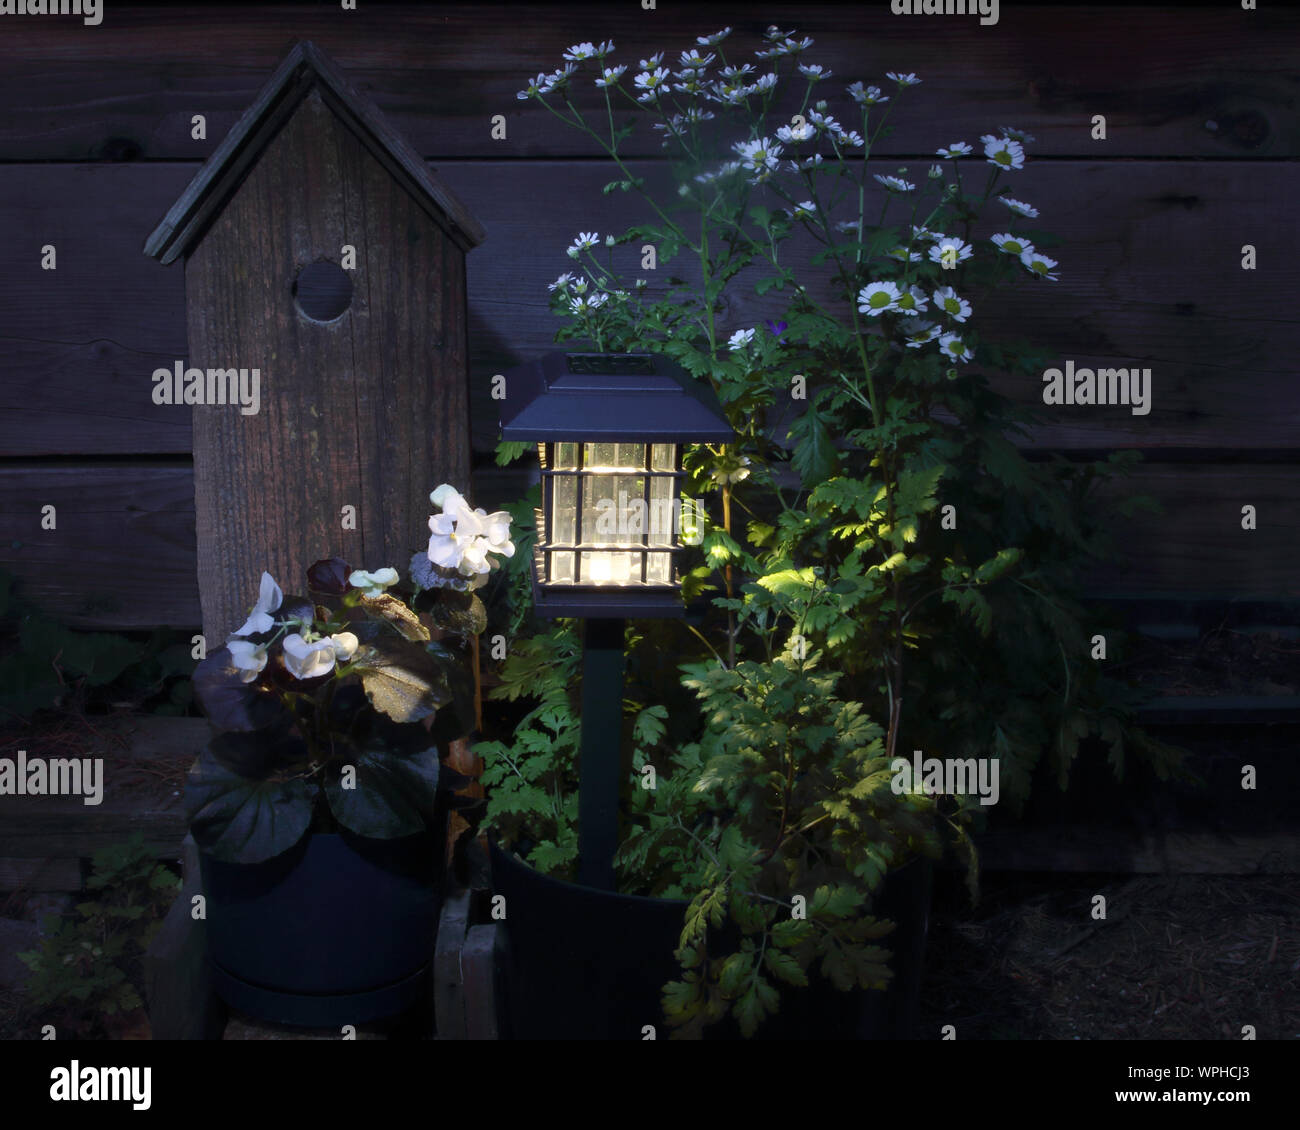 Un solare lanterna si diffonde un po' di luce sulla febbre pochi fiori e un fake birdhouse come le tenebre della sera si chiude. Foto Stock